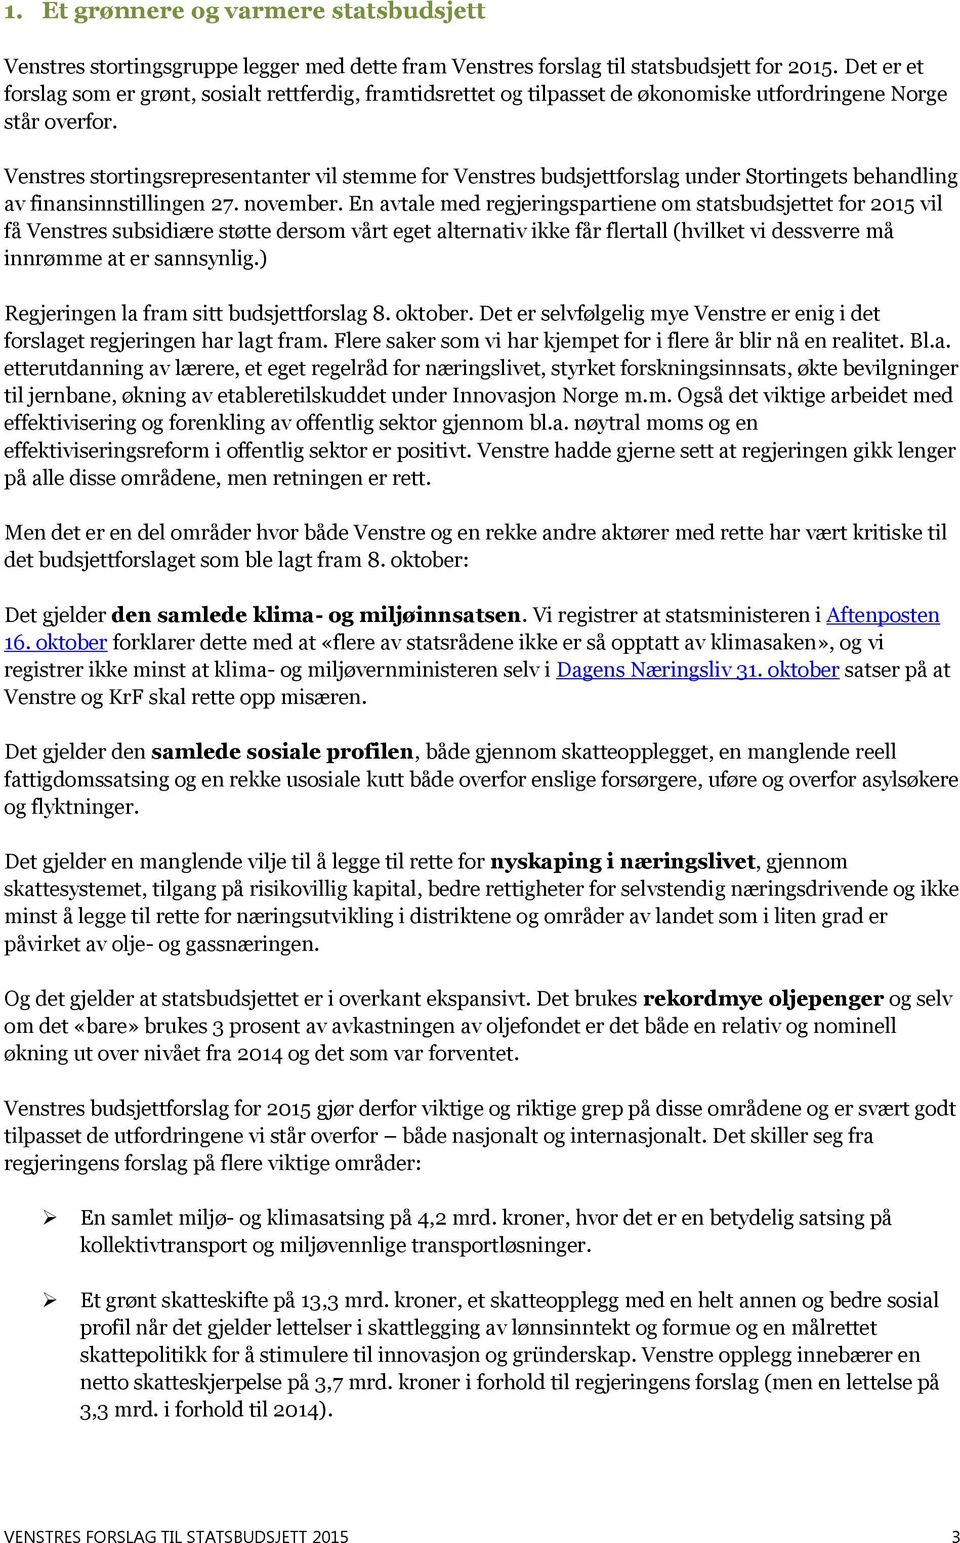 Venstres stortingsrepresentanter vil stemme for Venstres budsjettforslag under Stortingets behandling av finansinnstillingen 27. november.